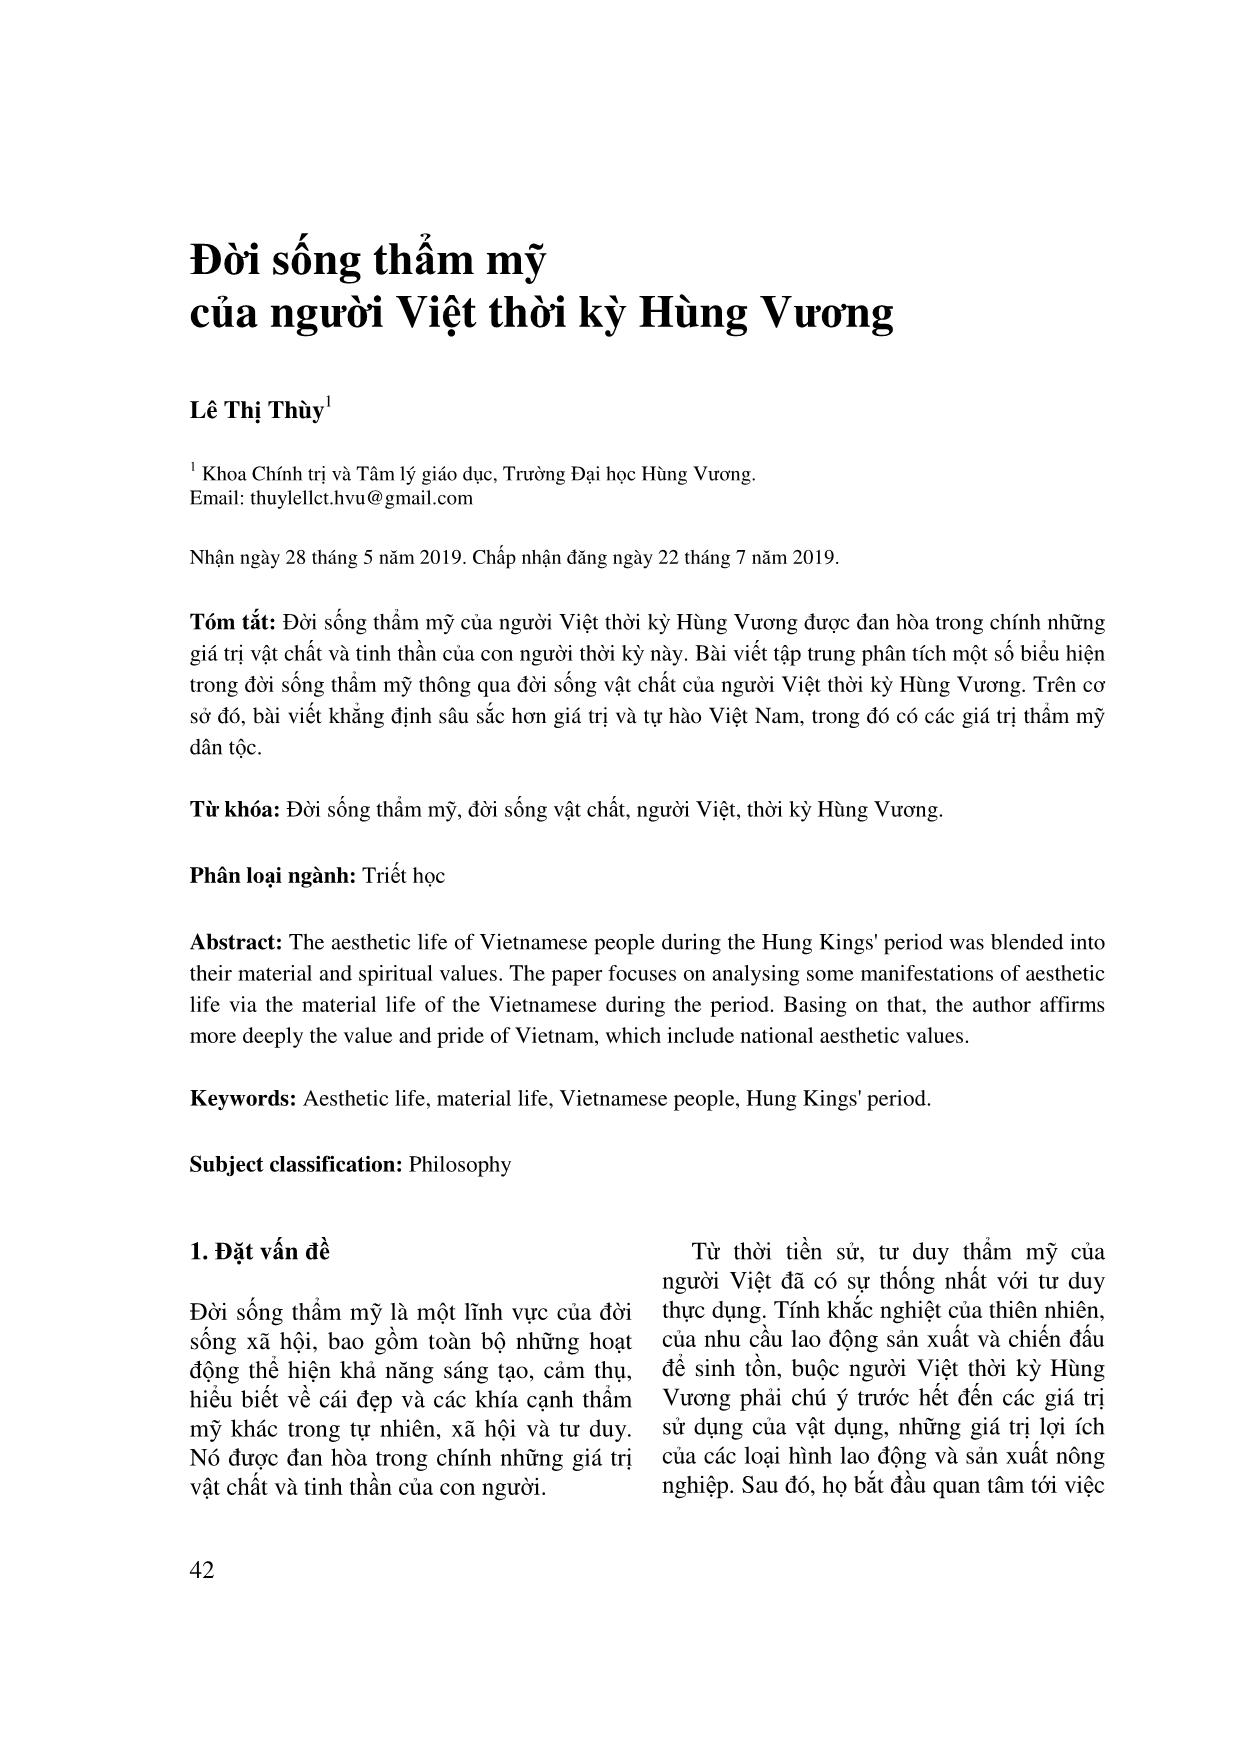 Đời sống thẩm mỹ của người Việt thời kỳ Hùng Vương trang 1